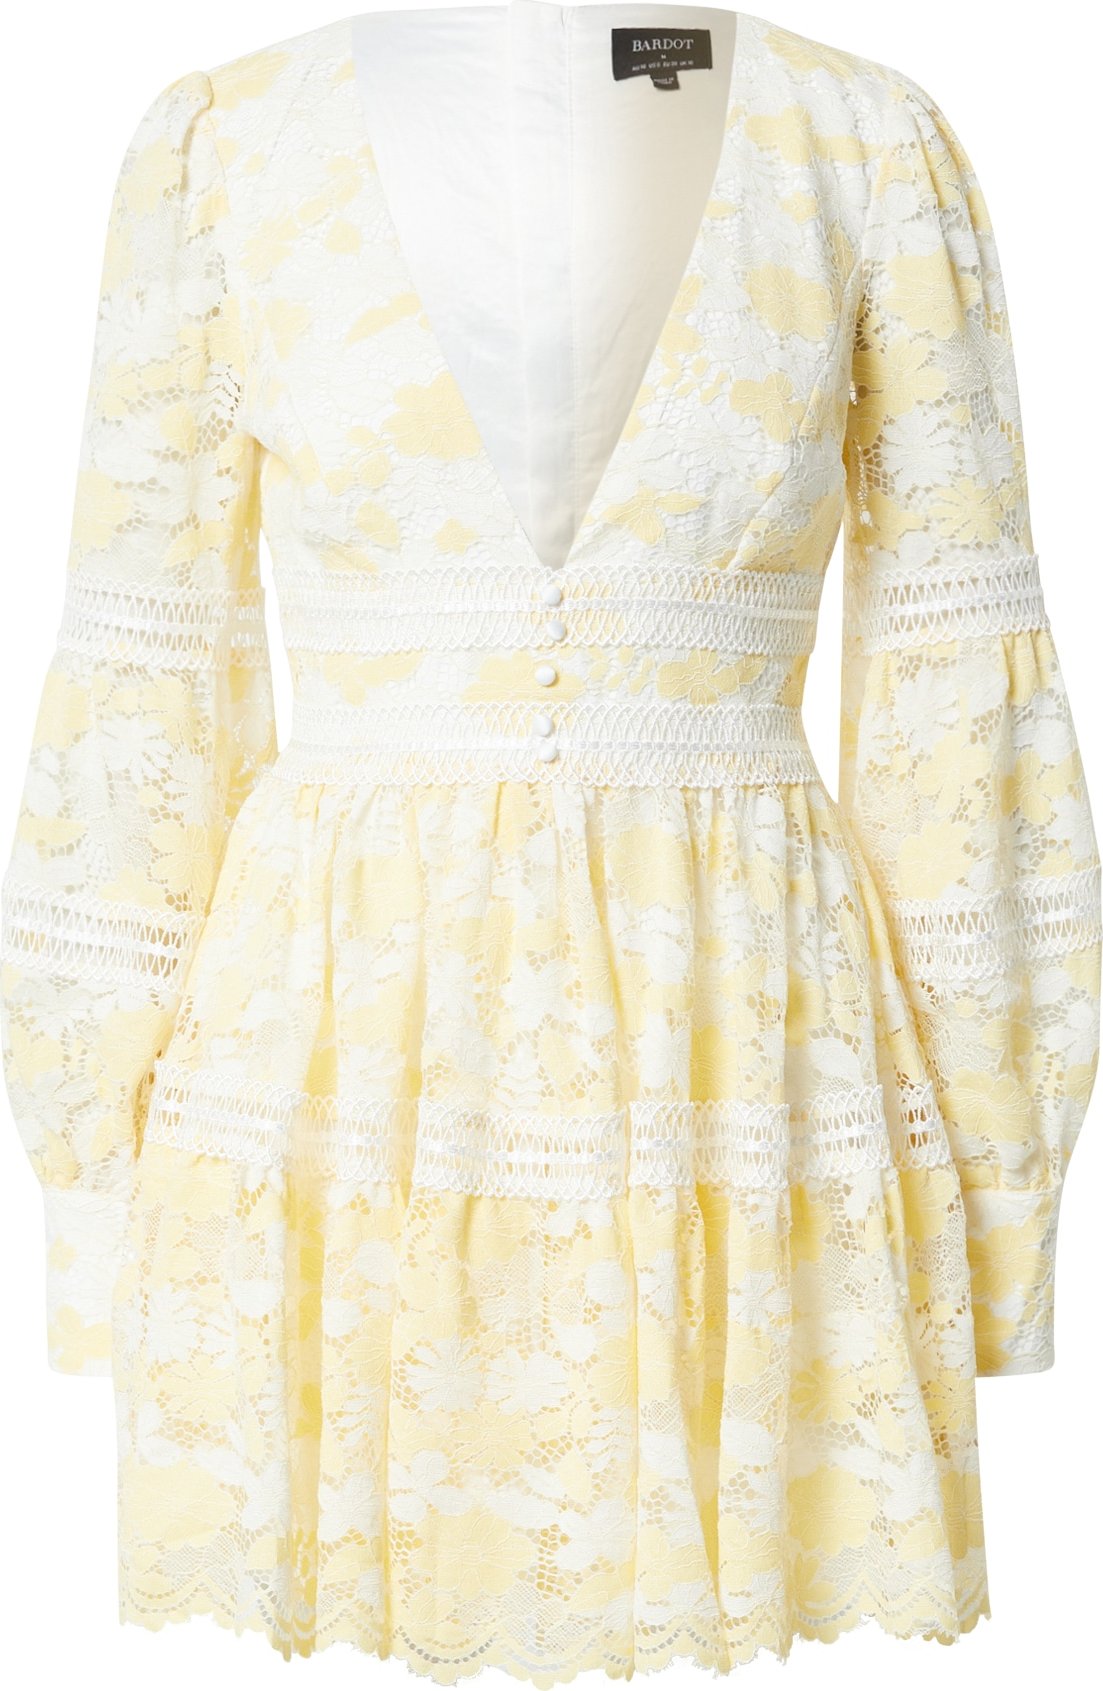 Bardot Košilové šaty 'VENICE' světle žlutá / bílá